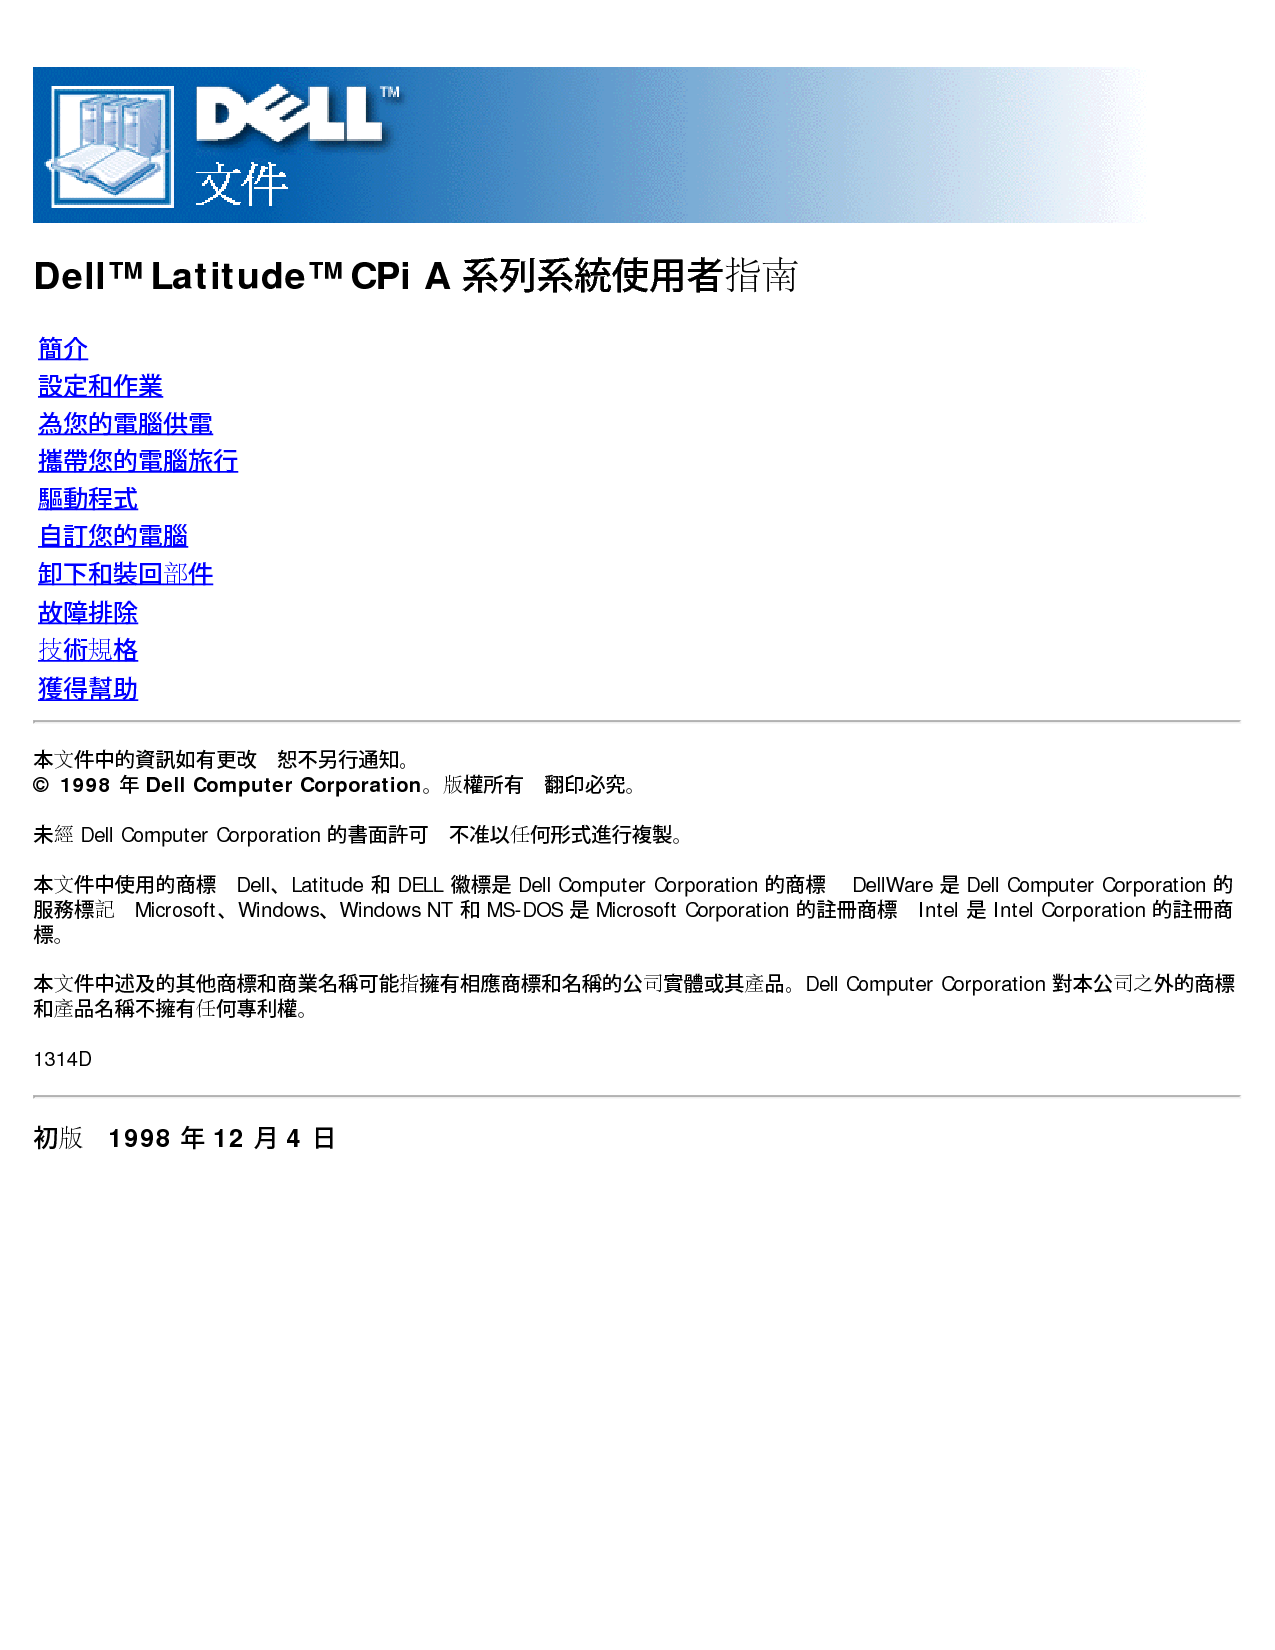 戴尔 Dell Latitude CPI A 用户指南 封面